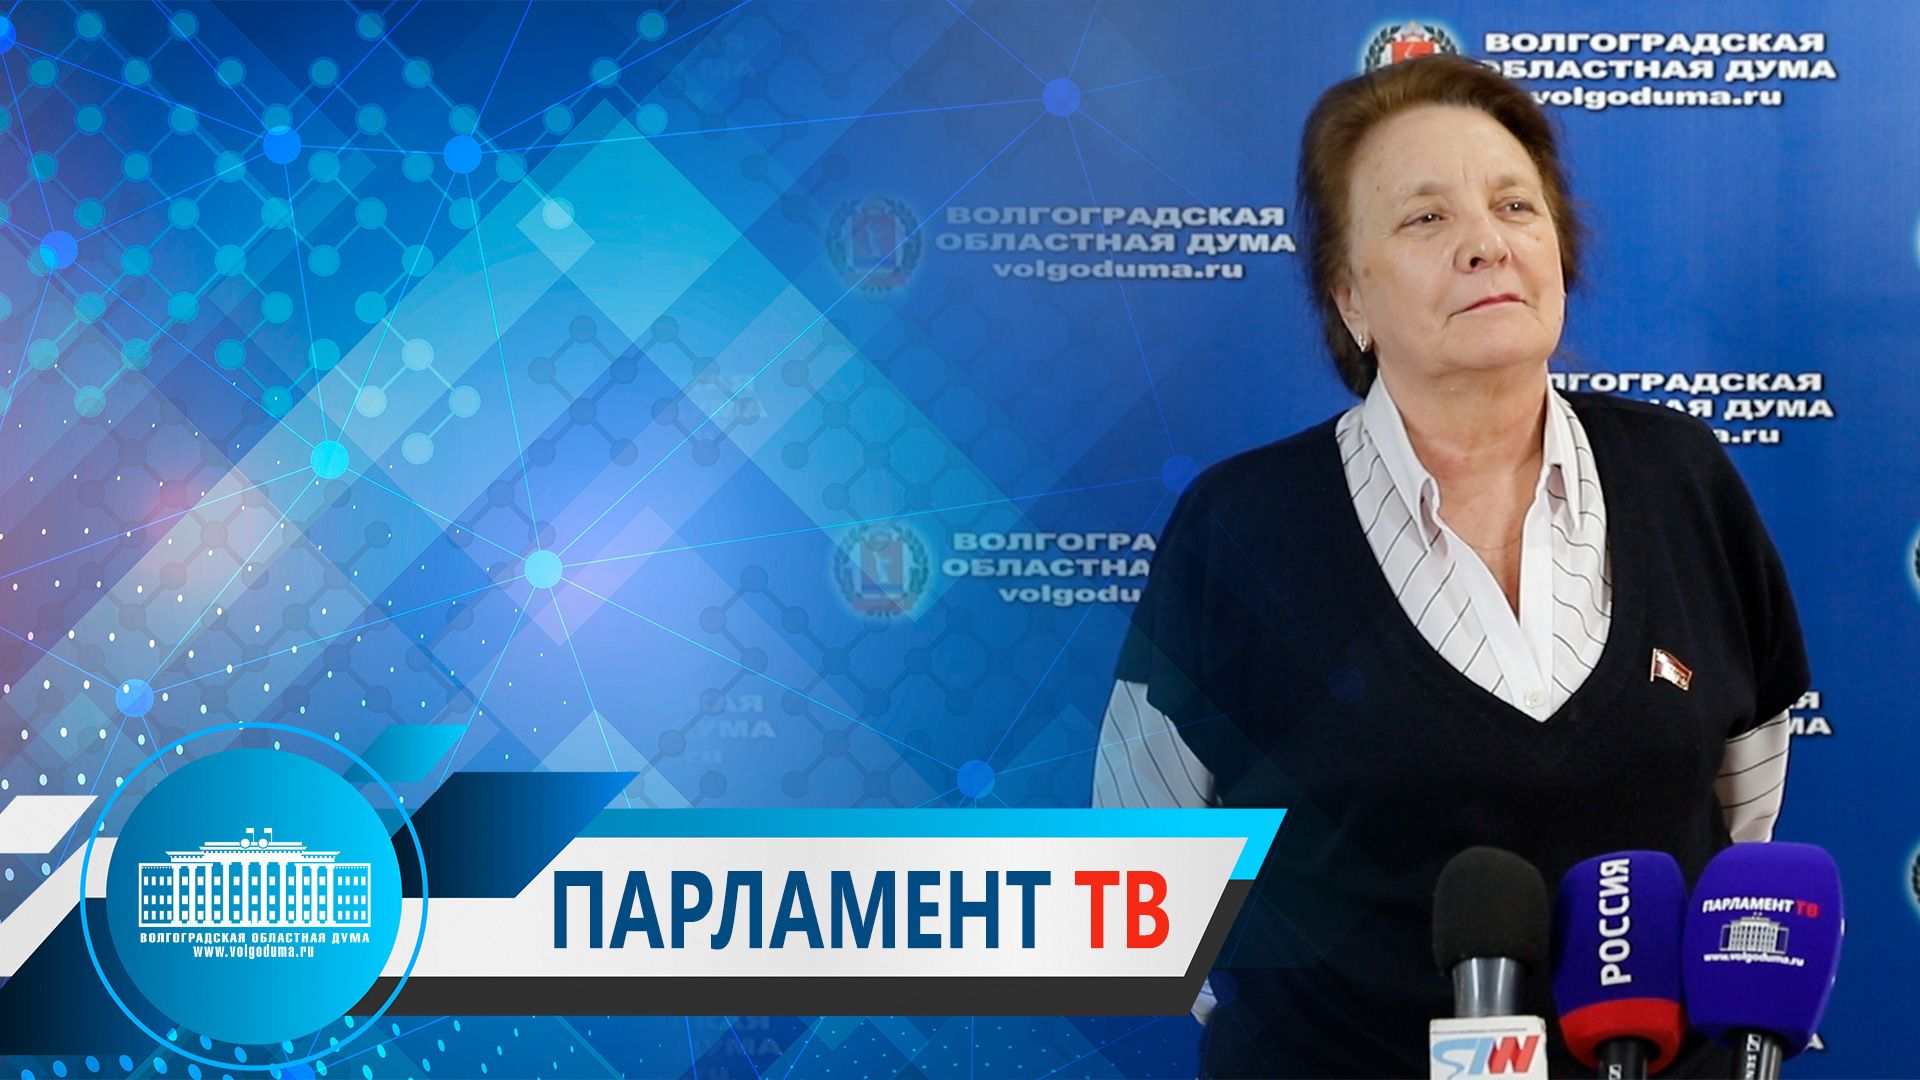 Тамара Головачева: "Сегодняшнее Послание Президента - это разговор о самом главном"